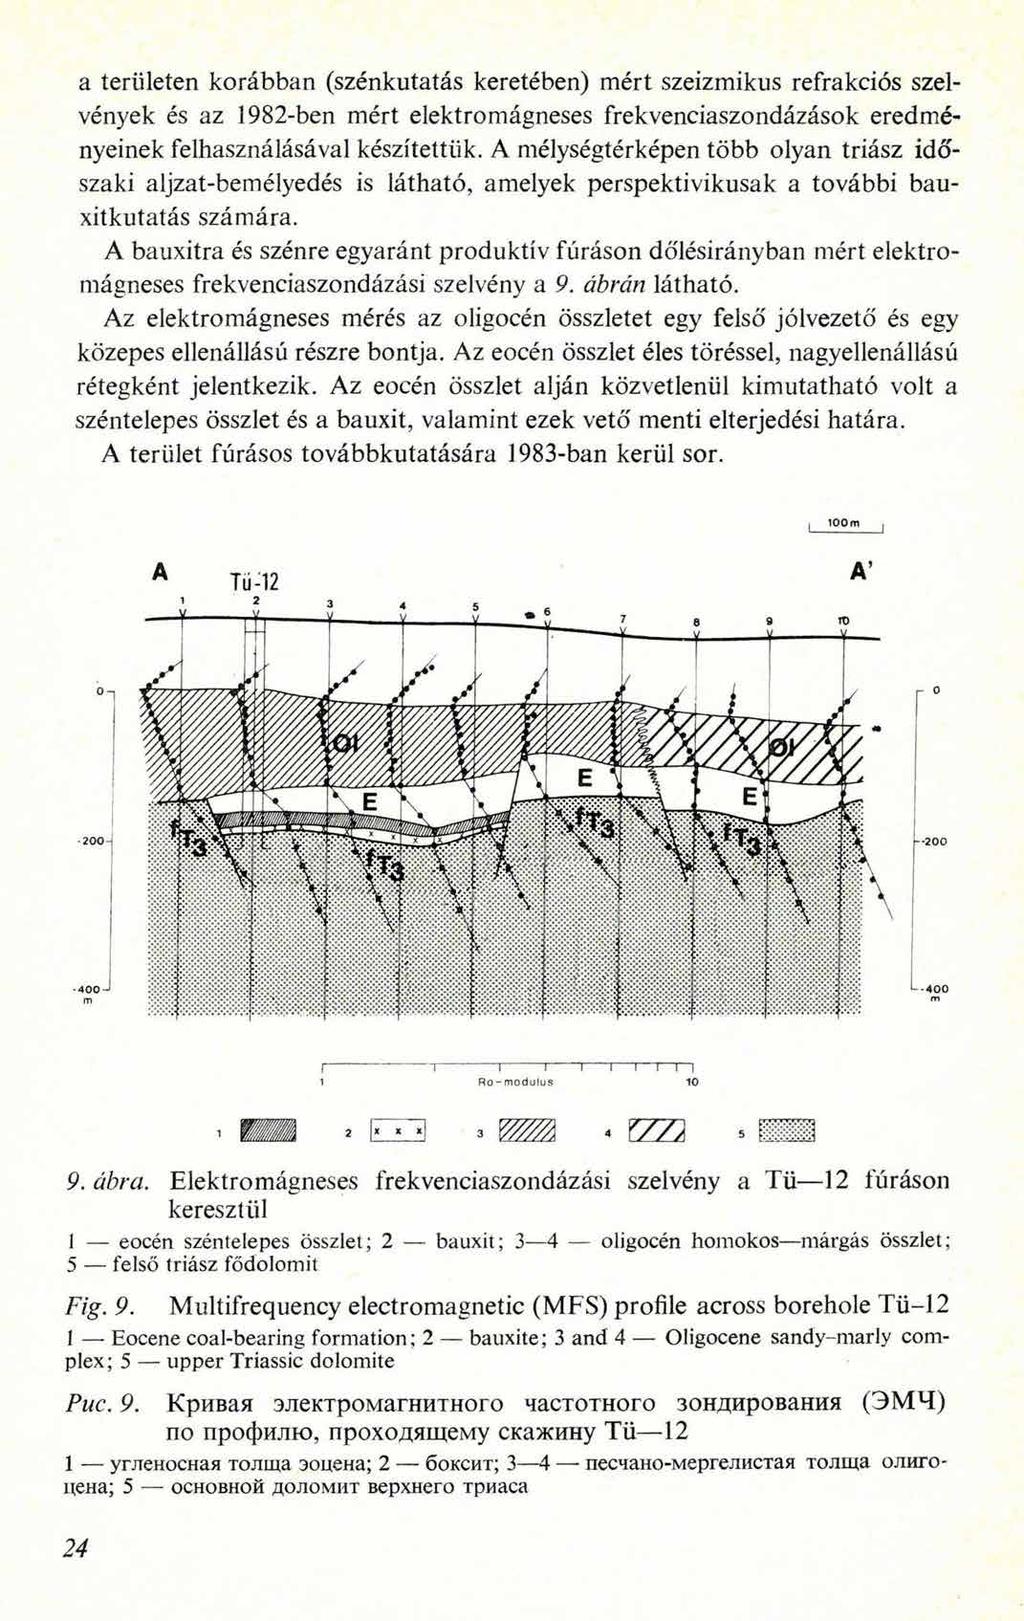 a területen korábban (szénkutatás keretében) mért szeizmikus refrakciós szelvények és az 1982-ben mért elektromágneses frekvenciaszondázások eredményeinek felhasználásával készítettük.